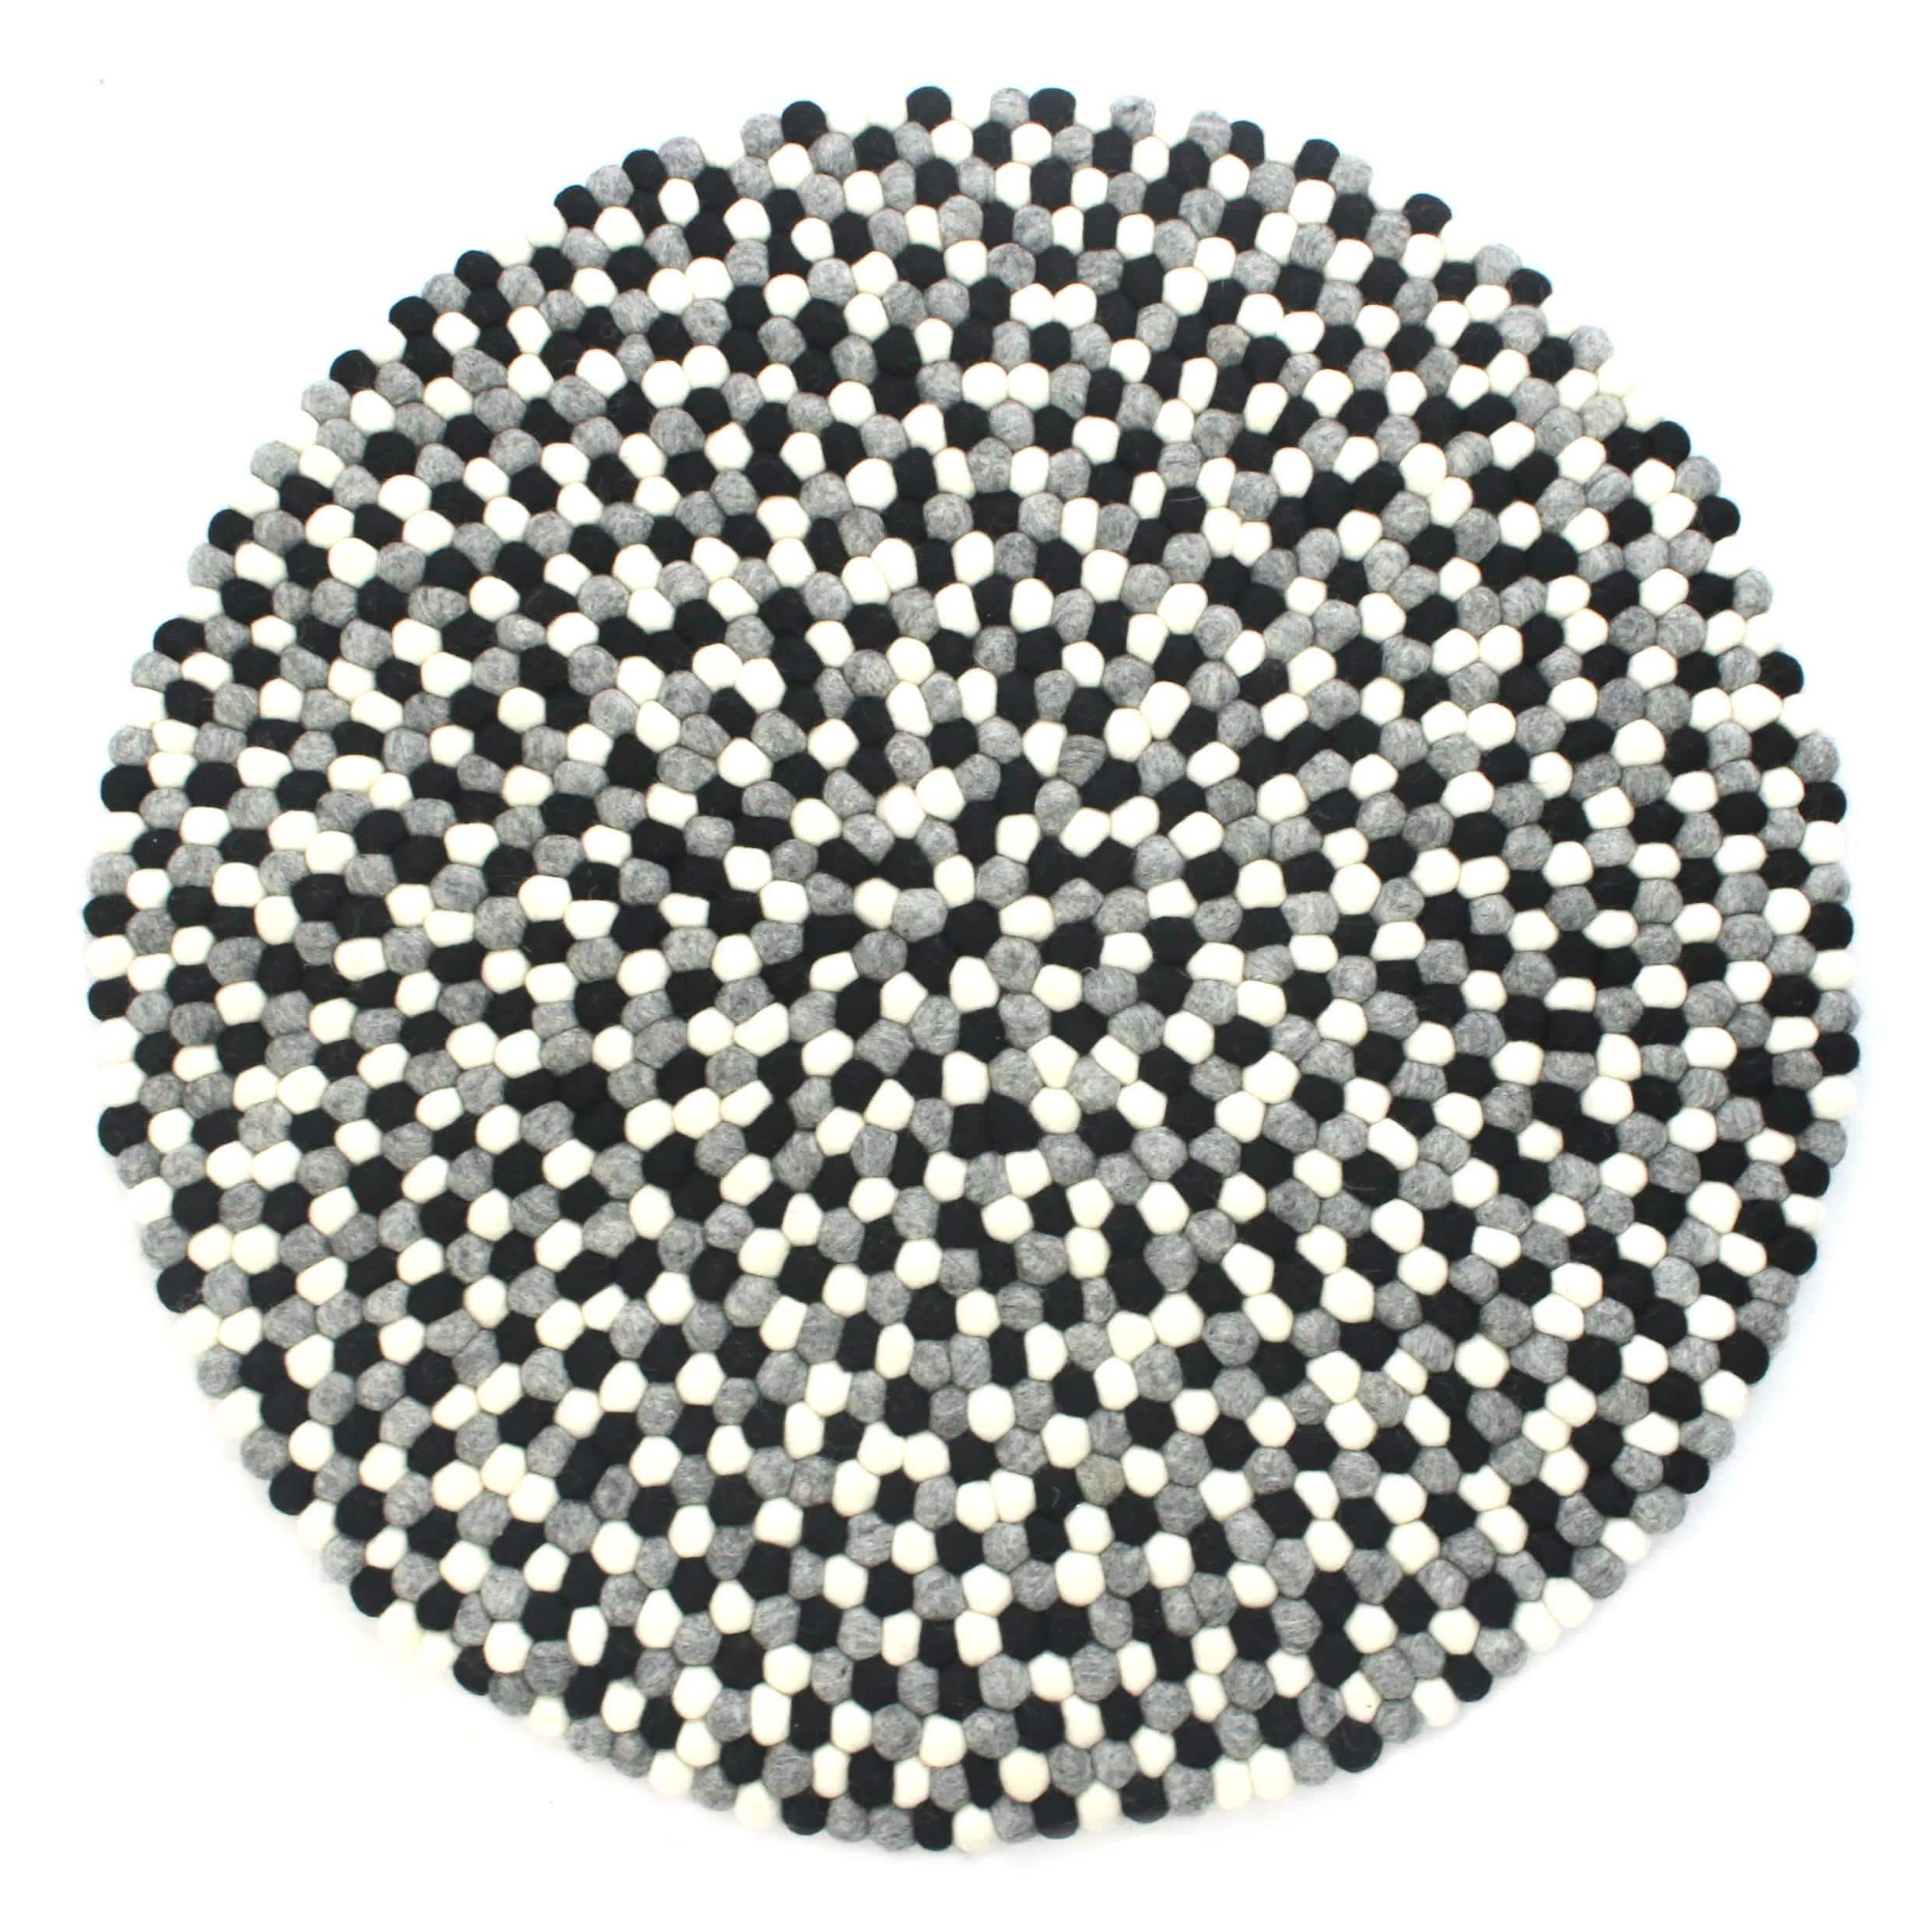 Billede af Kugletæppe håndlavet i 100% ren uld - Sort, Hvid og Grå